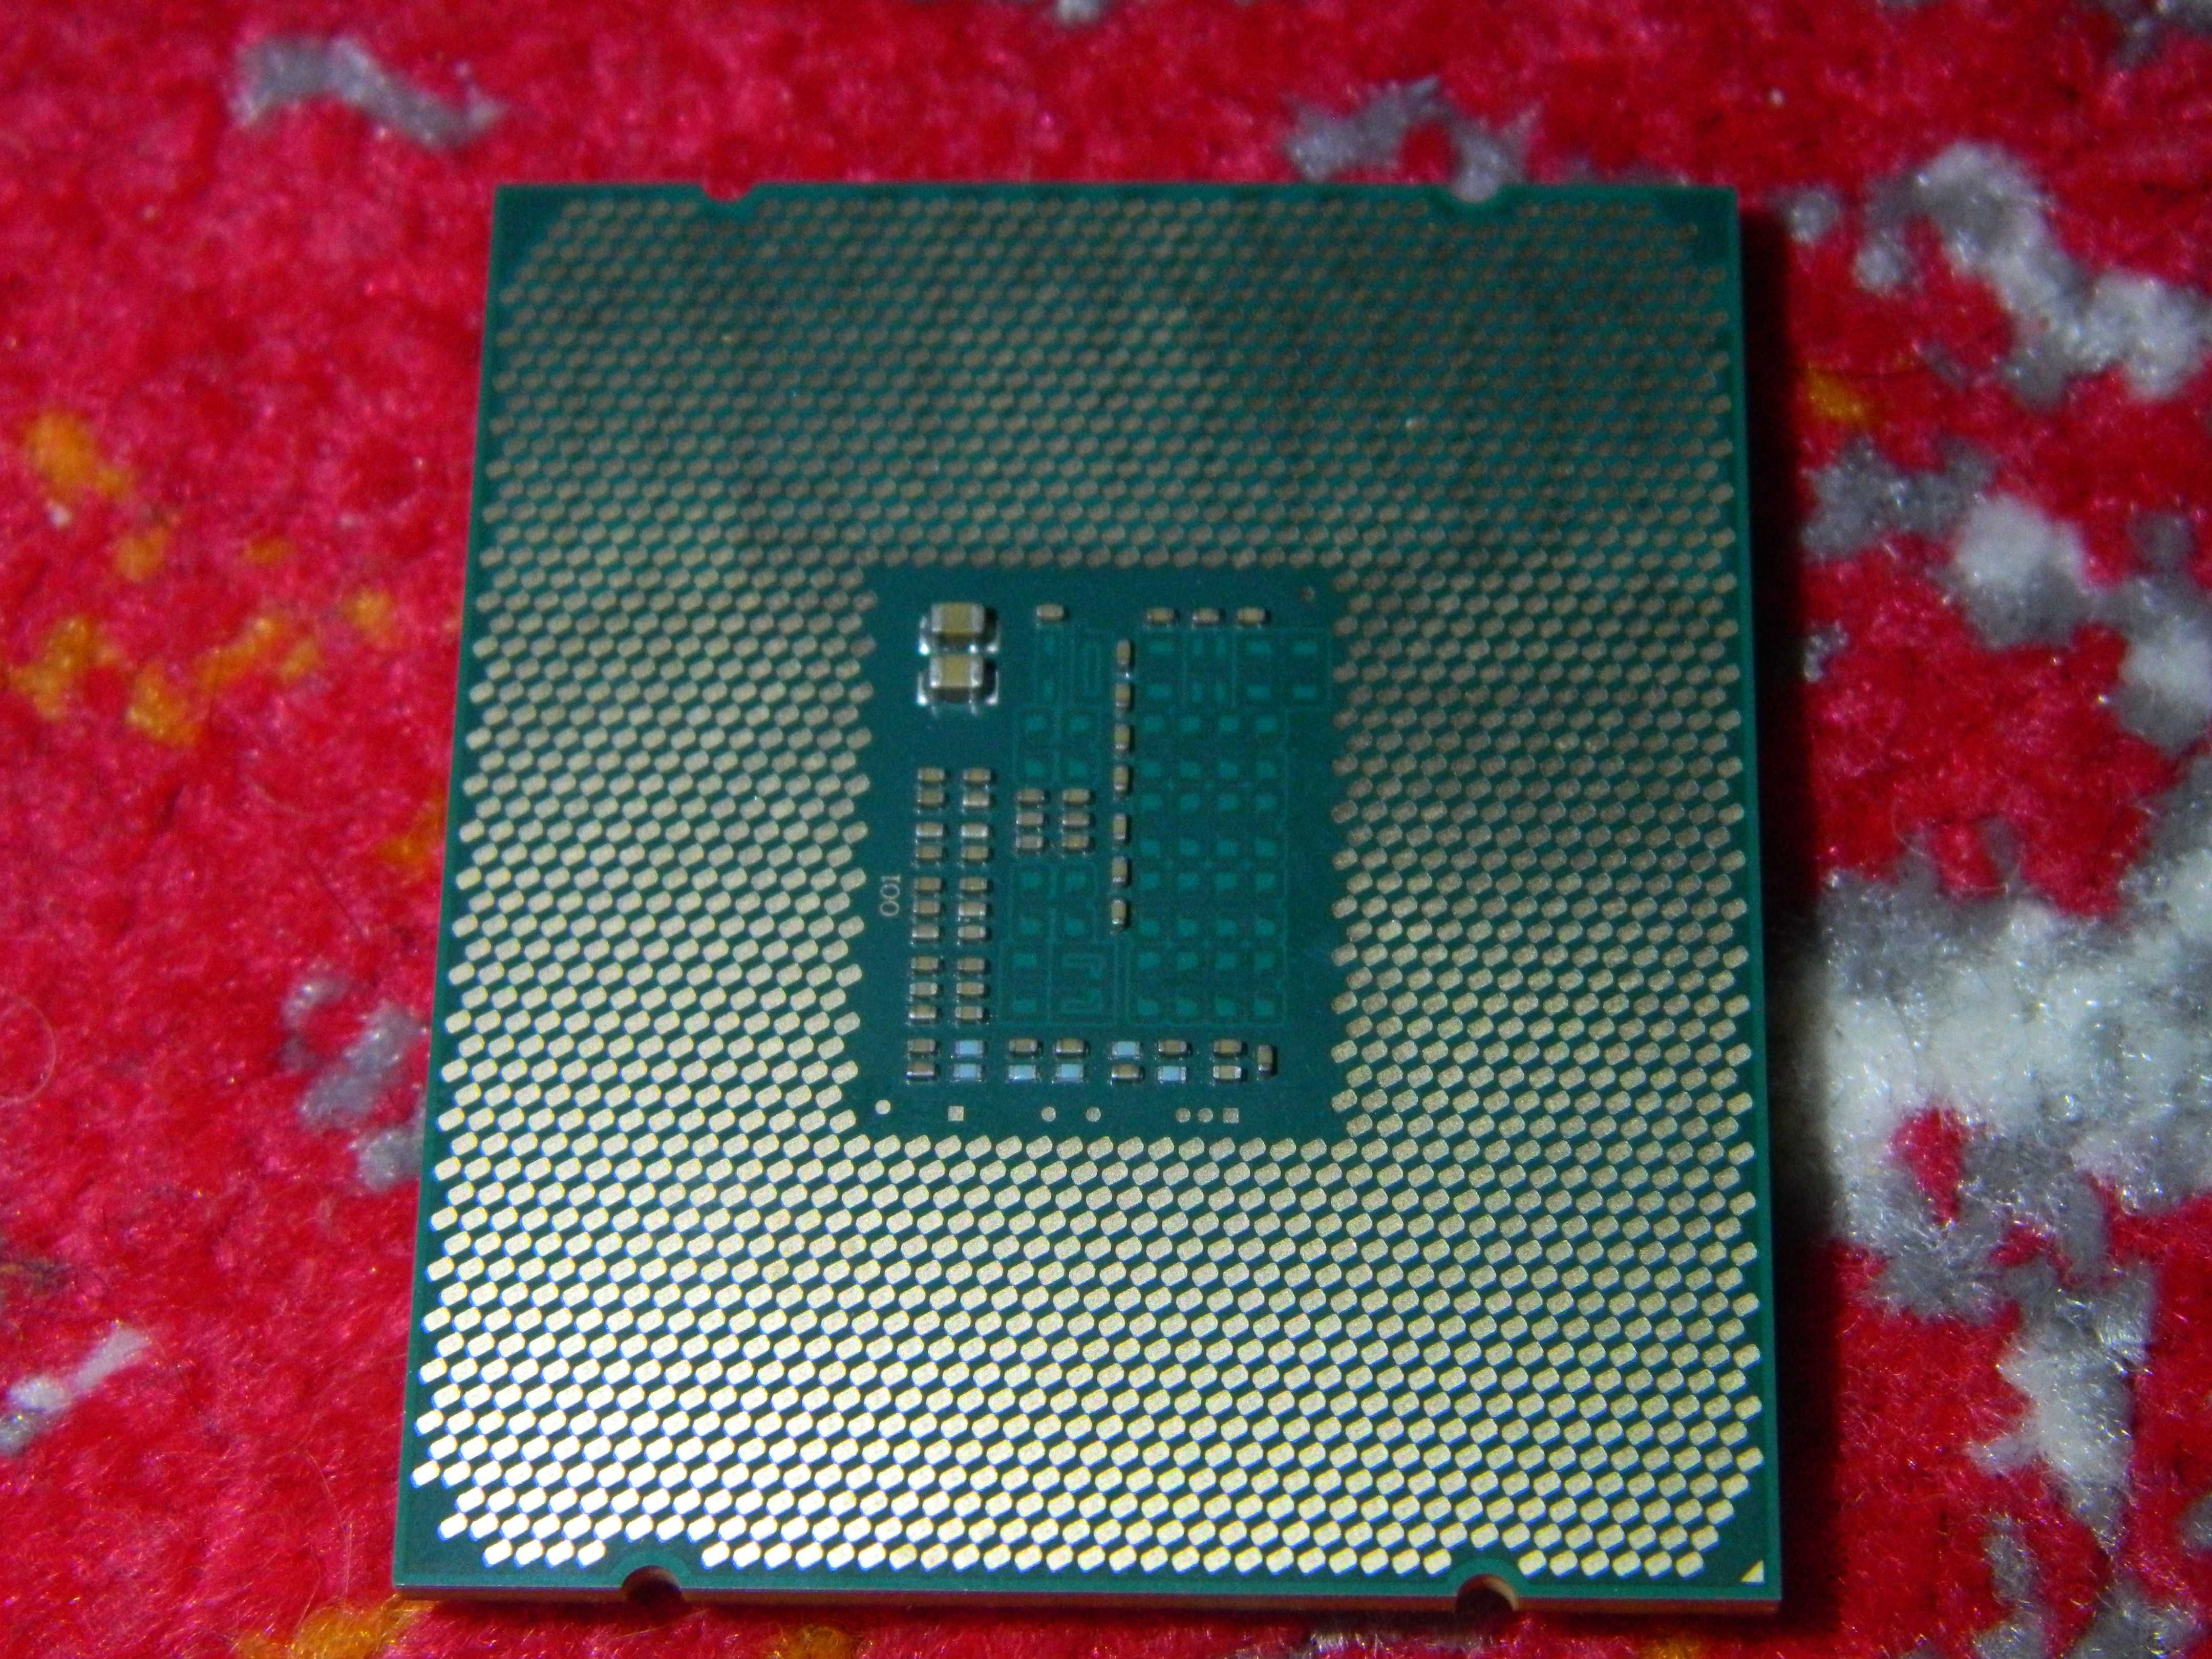 Procesor Intel Xeon E5 1620v3 / lga 2011 - 3 ( lepsze niż tylko 2011 )